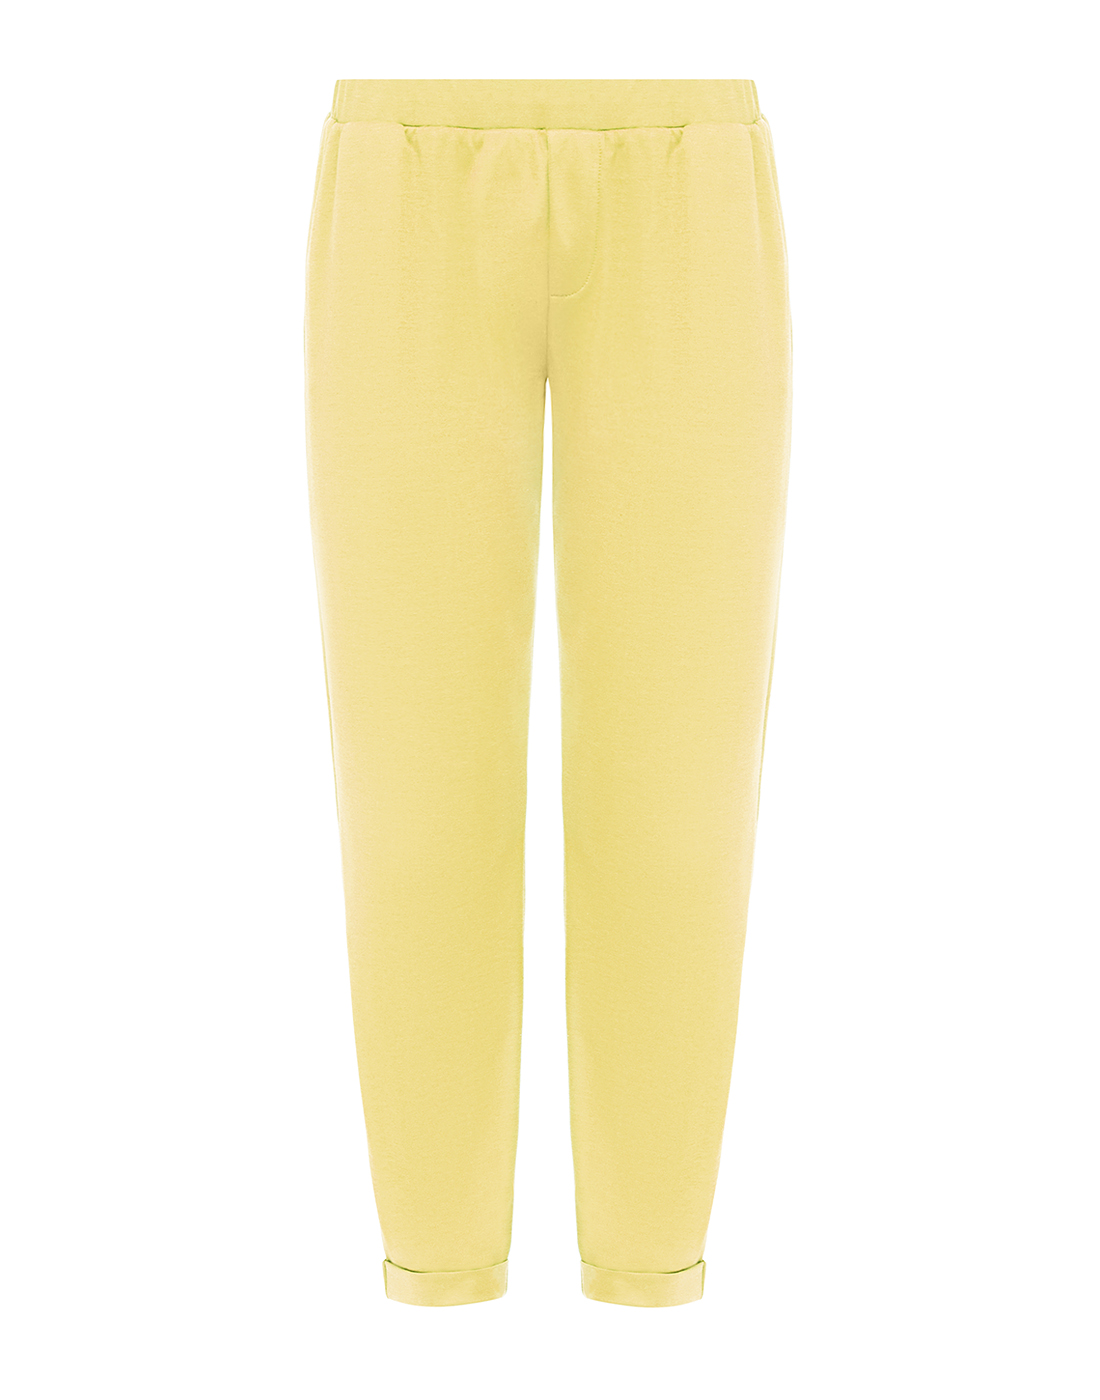 Женские желтые брюки Gran Sasso SG2021/76200/83307/304-1